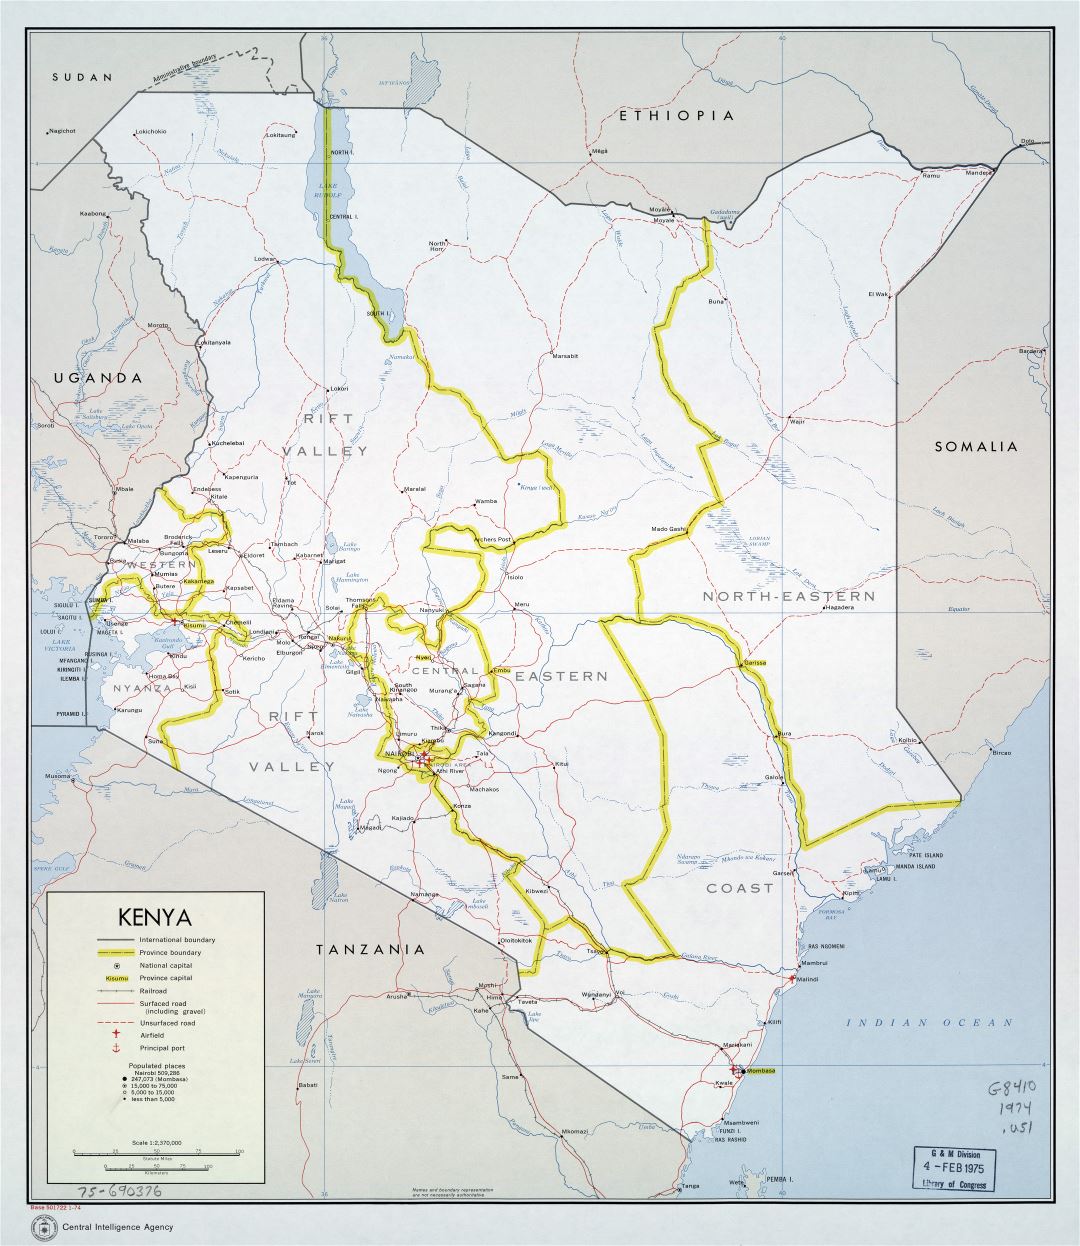 Крупномасштабная политическая и административная карта Кении с дорогами, железными дорогами, городами, портами и аэропортами - 1974